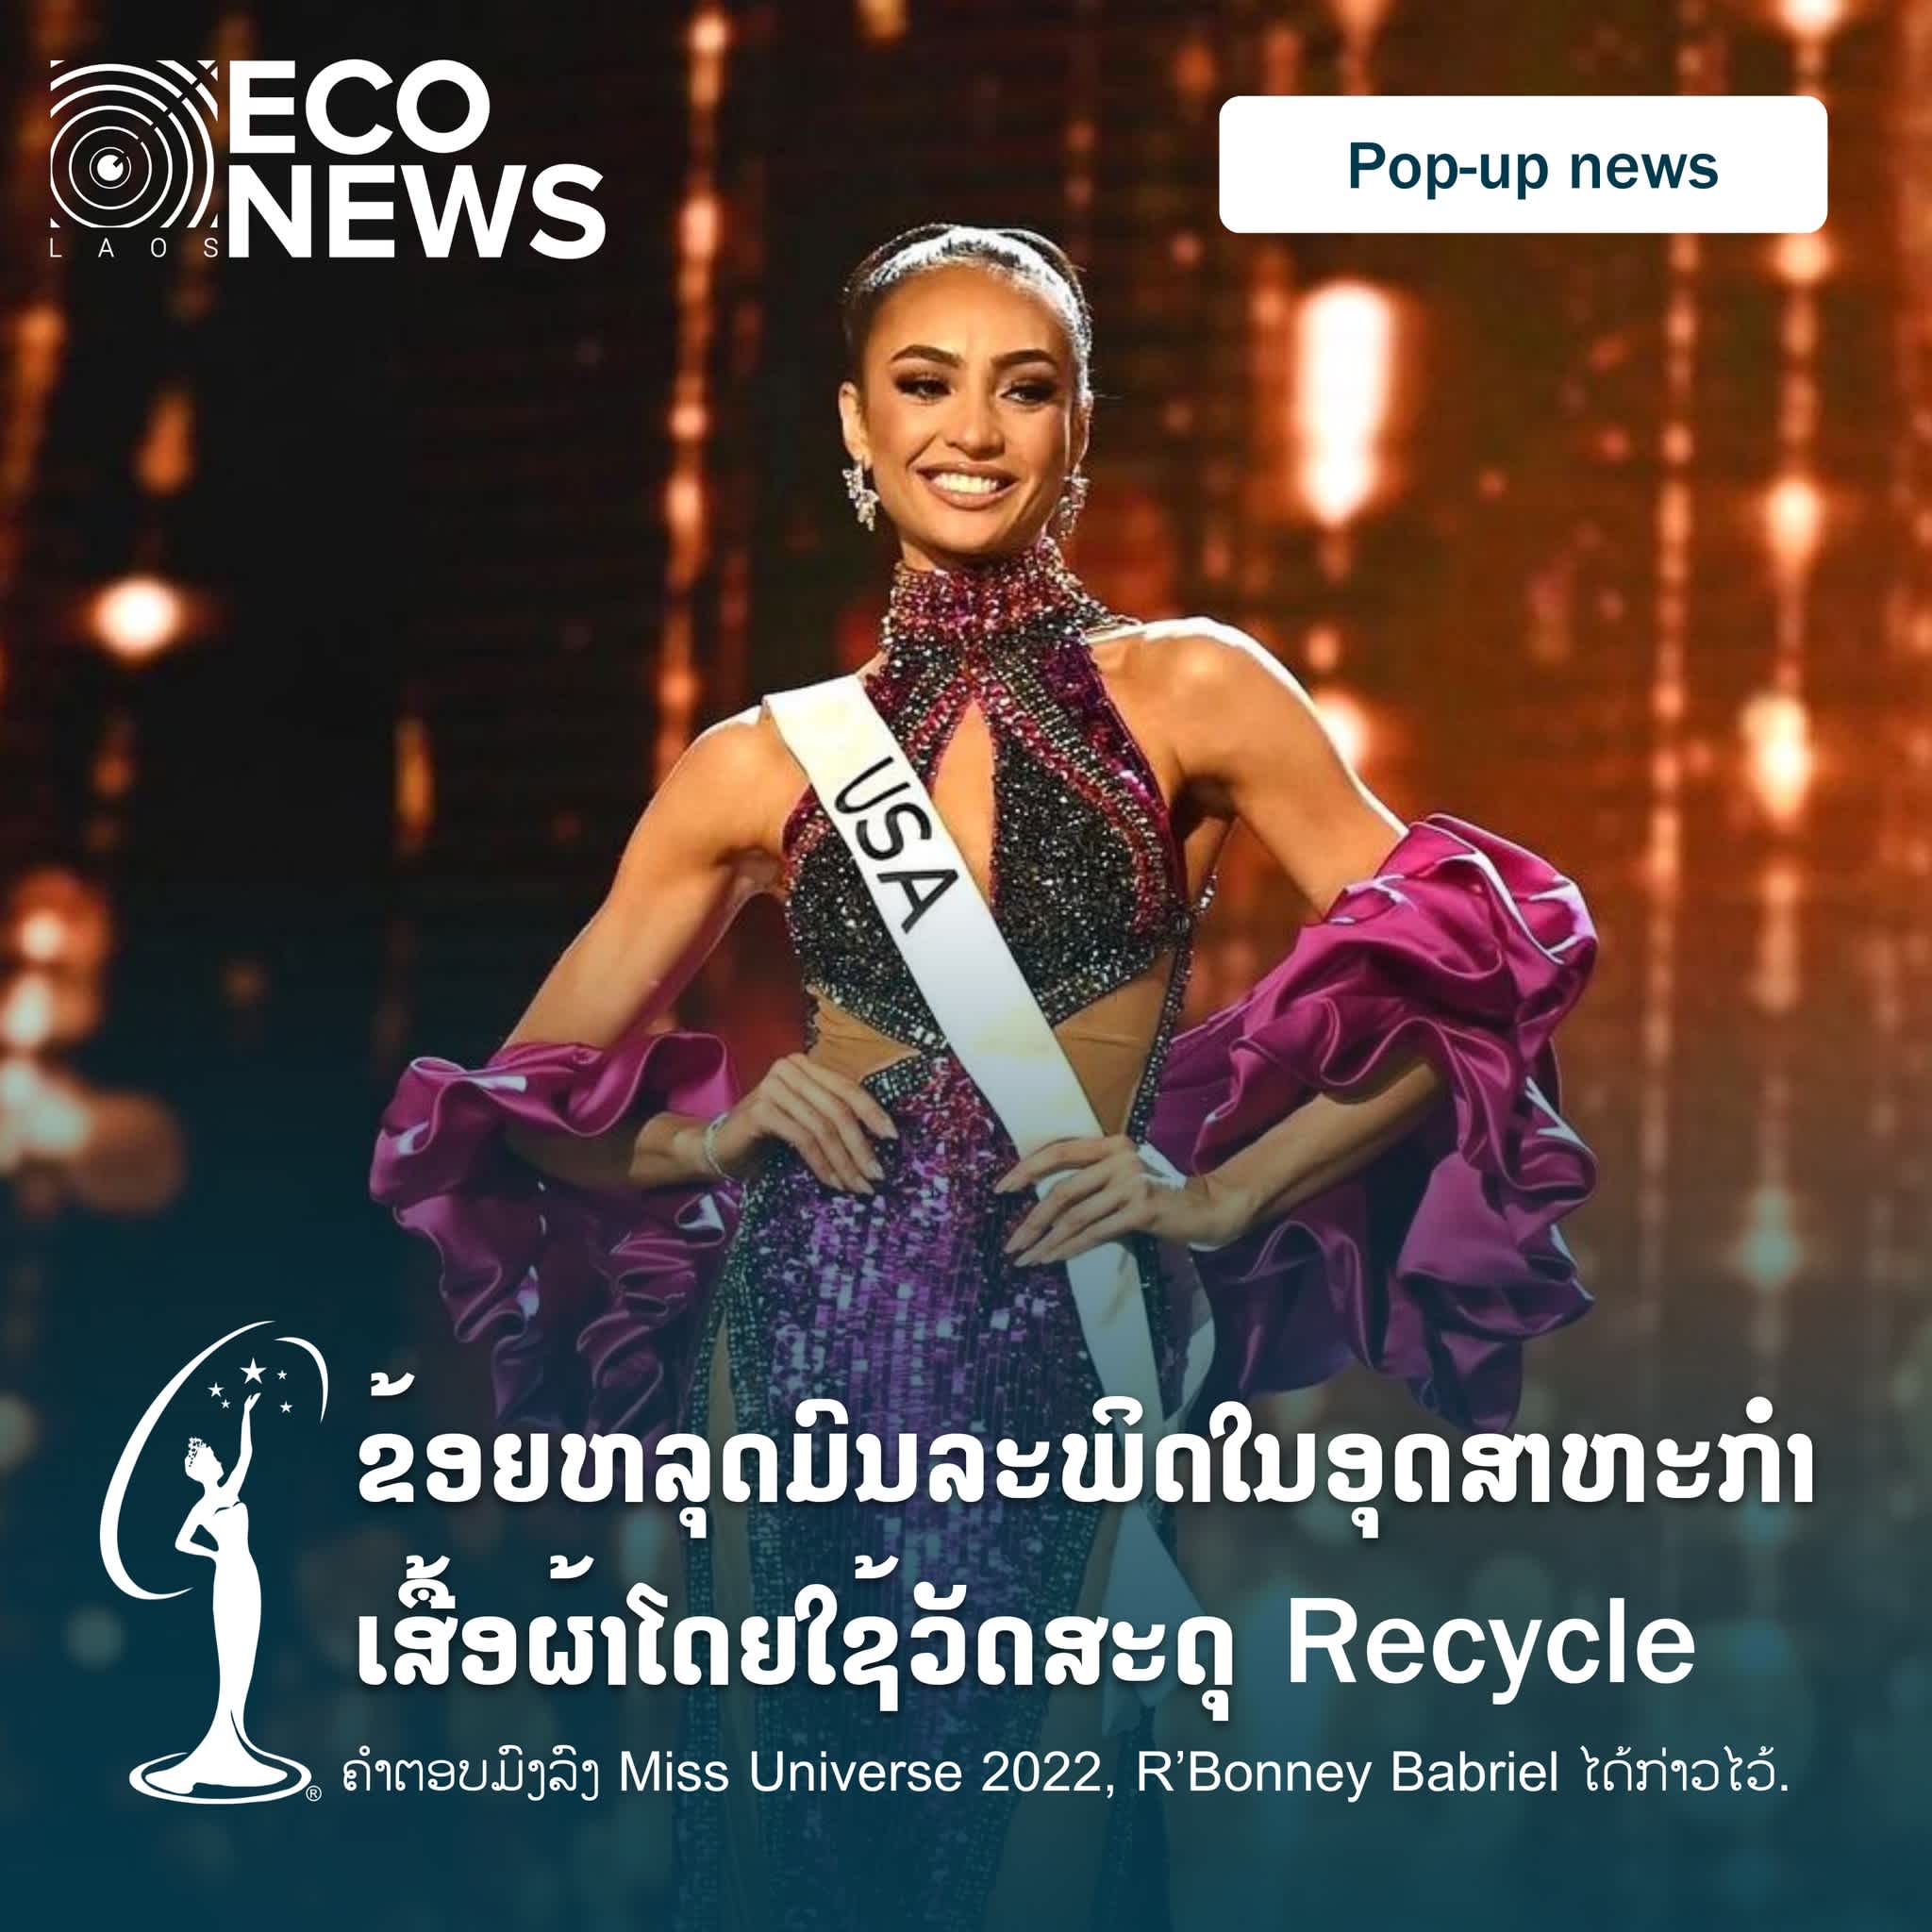 "ຂ້ອຍຫຼຸດມົນລະພິດໃນອຸດສາຫະກໍາແຟຊັ່ນໂດຍໃຊ້ວັດສະດຸ Recycle" ຄໍາຕອບມົງລົງຈາກຜູ້ຊະນະເລີດ Miss Universe 2022, R’Bonney Babriel ໄດ້ກ່າວໄວ້